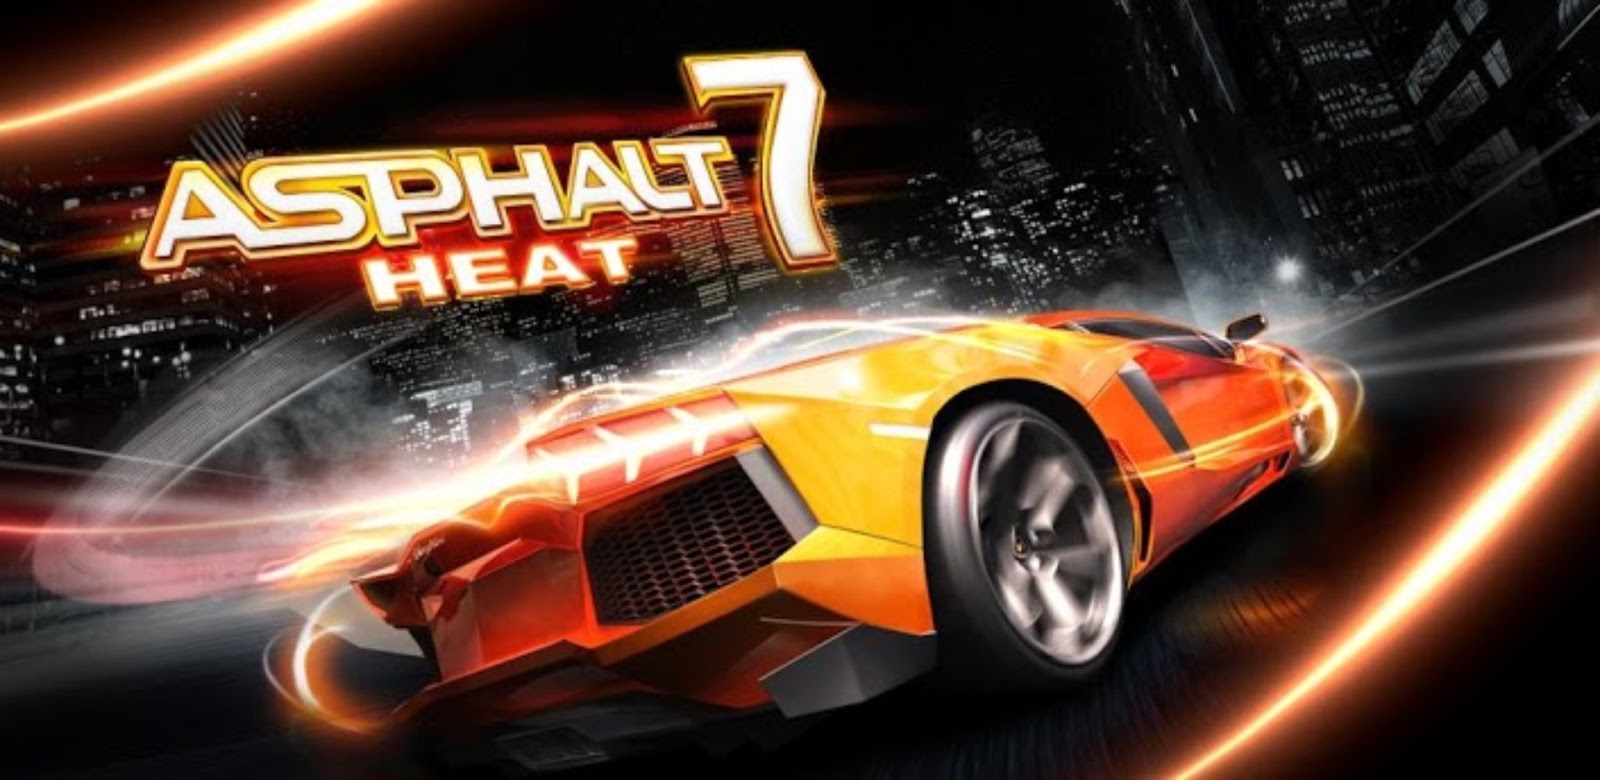 Asphalt 7 Heat v1.0.4 APK + SD DATA Android Games Download